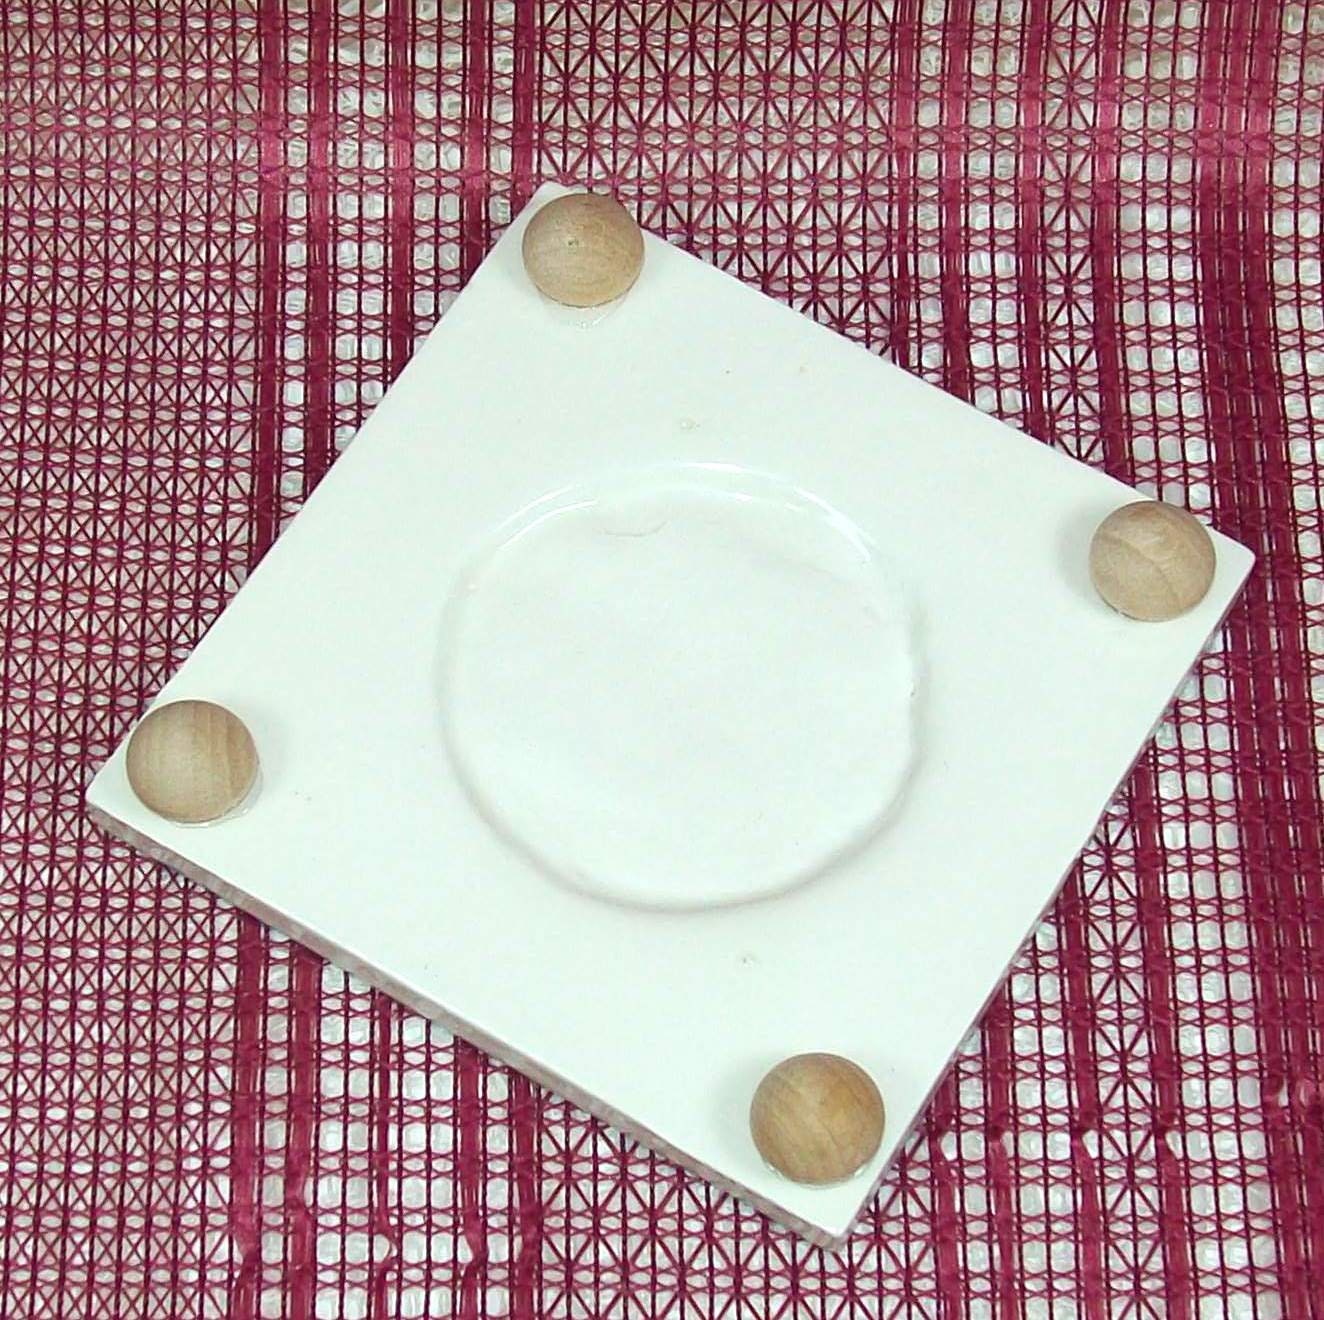 Ceramic Spoon Rest / Tile Trivet / Tea Bag Holder / Spoon Holder / Wine Glass Coaster / Ceramic Trivet / Cup Holder / Serenity Prayer Tile